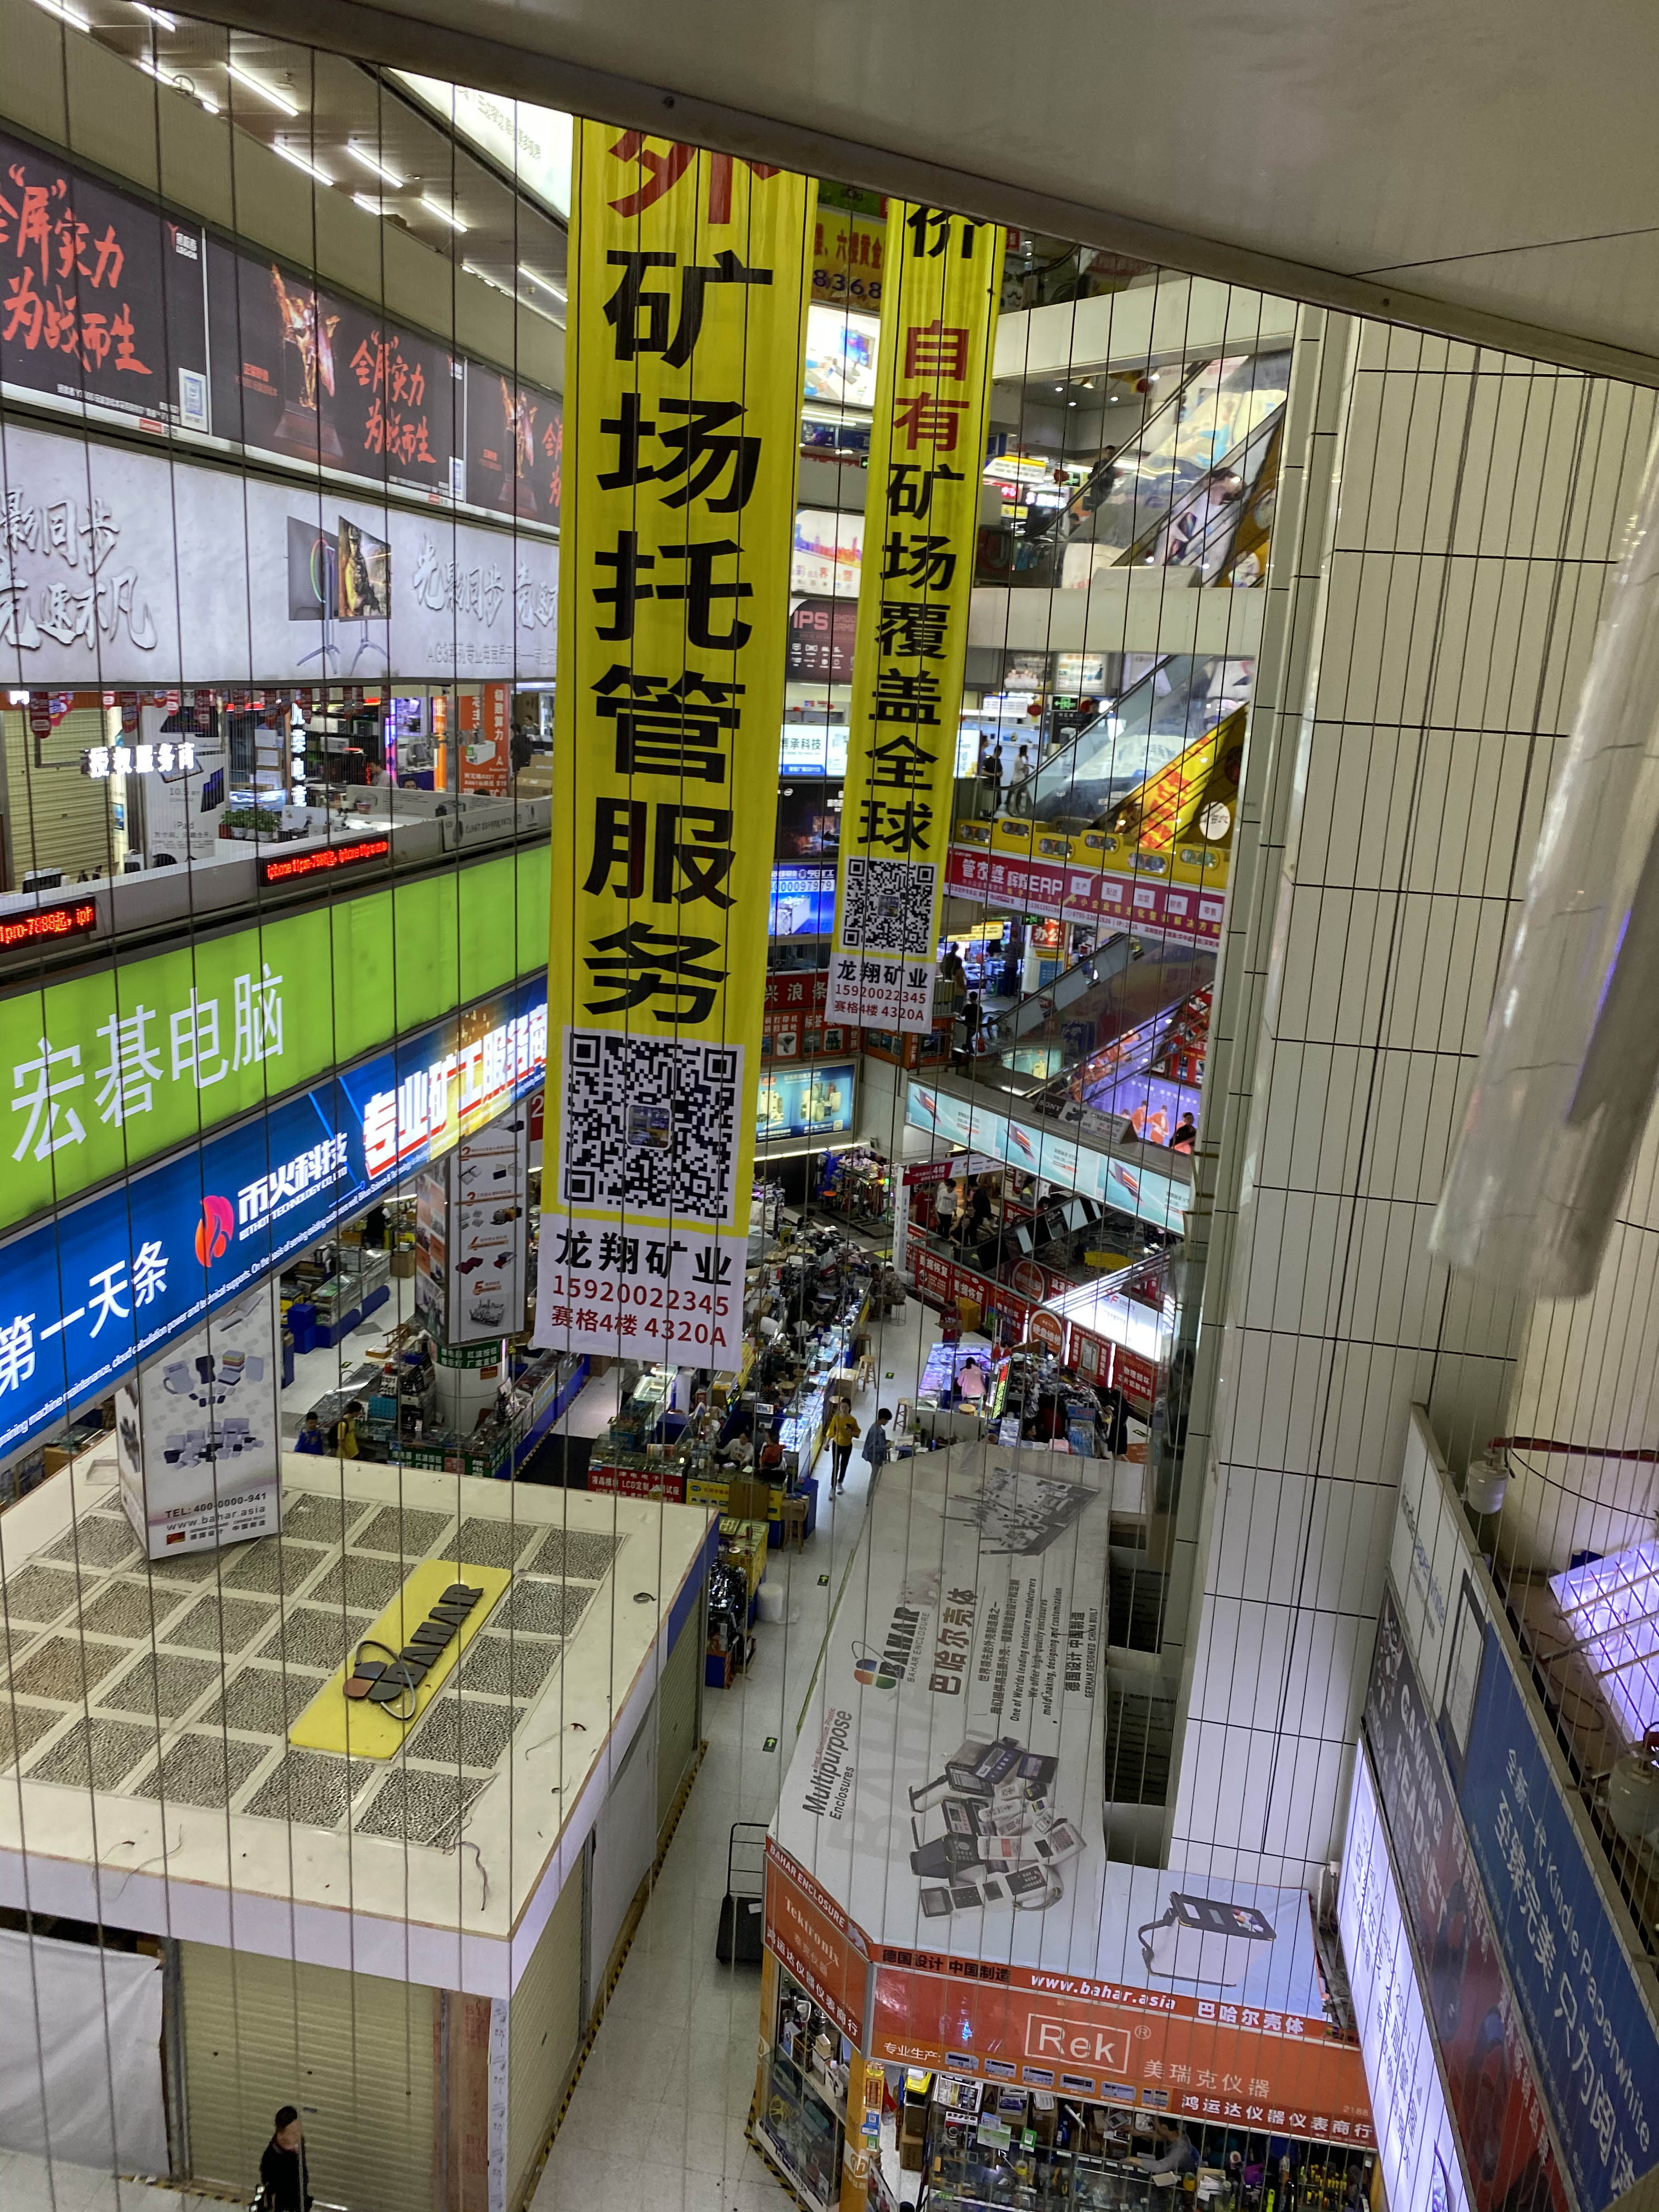 Huaqiangbei markets